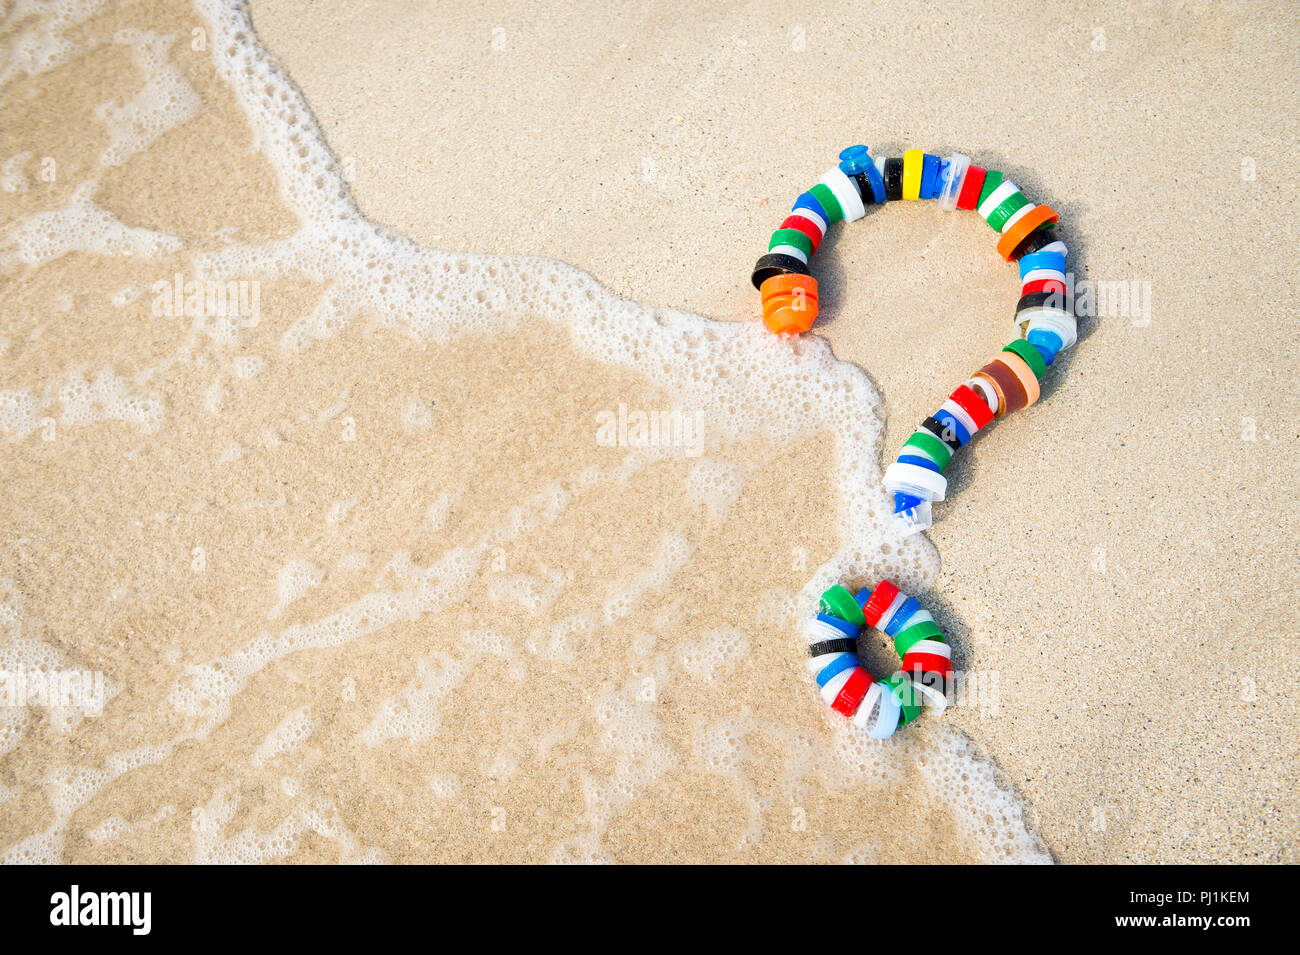 Colorato i tappi di bottiglia a forma di punto interrogativo su di una spiaggia di sabbia come un'onda lavaggi. Agire sull'inquinamento - Ridurre, riutilizzare e riciclare Foto Stock